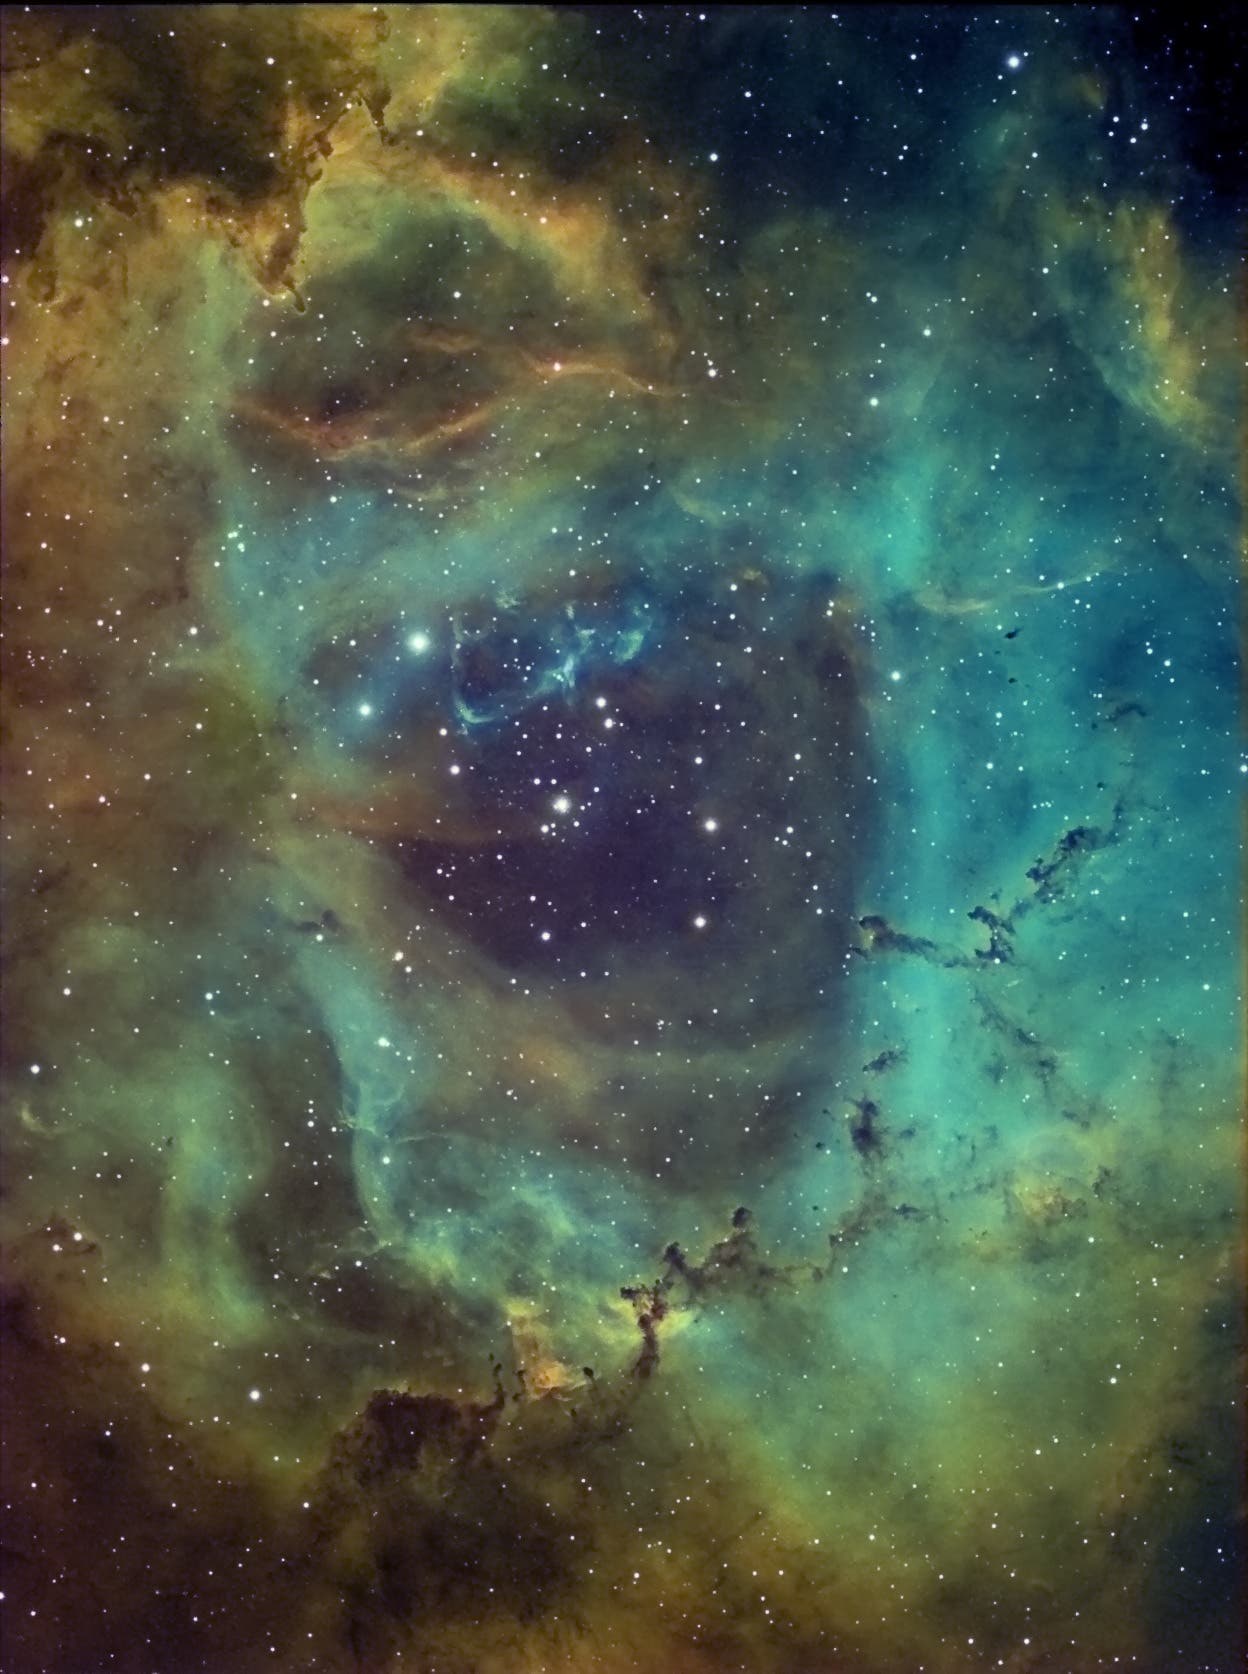 Rosettennebel NGC 2244